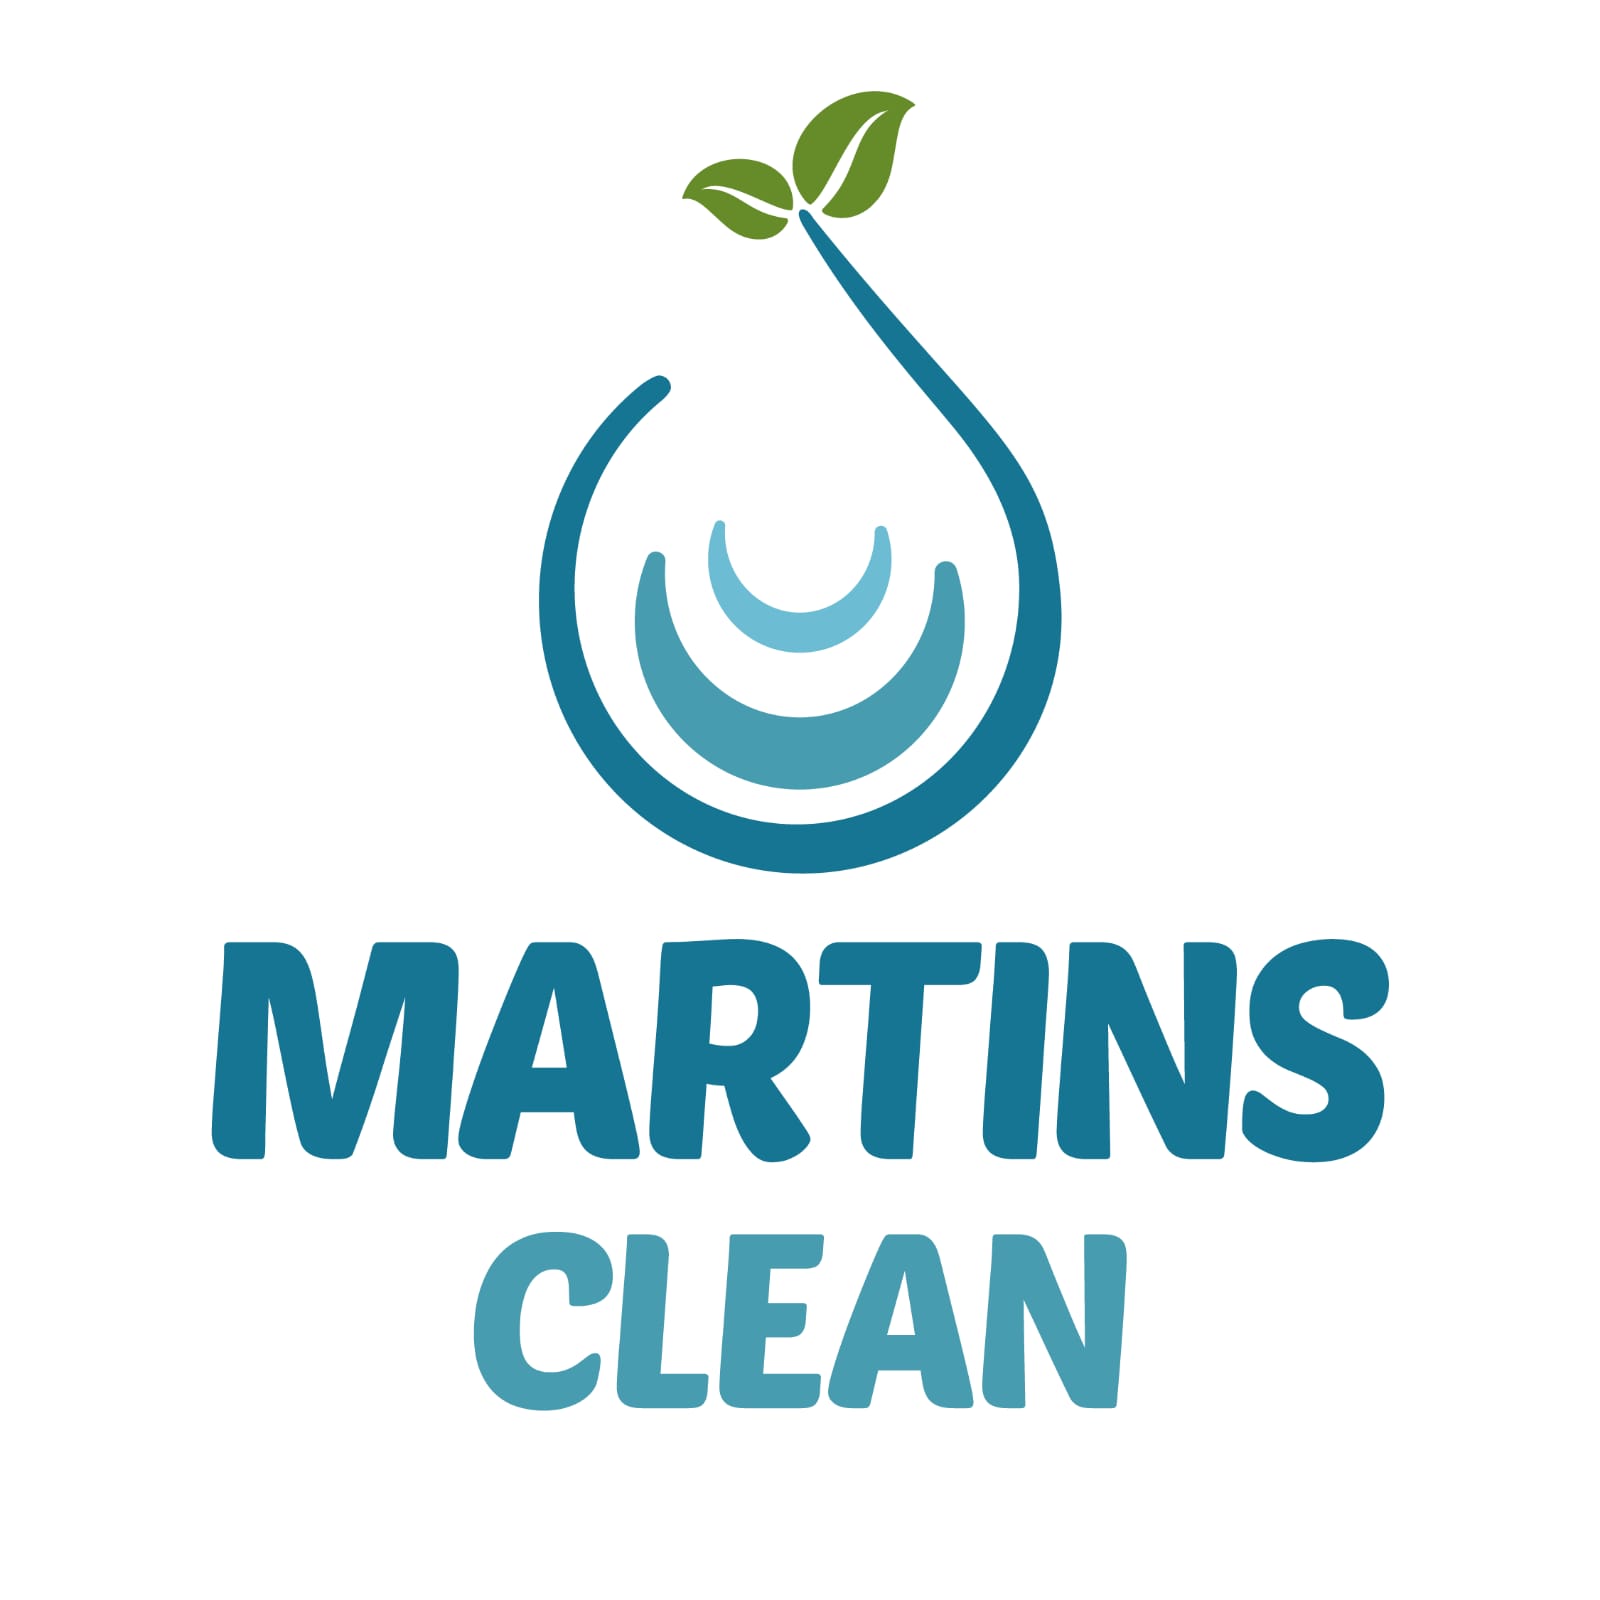 MARTINS CLEAN